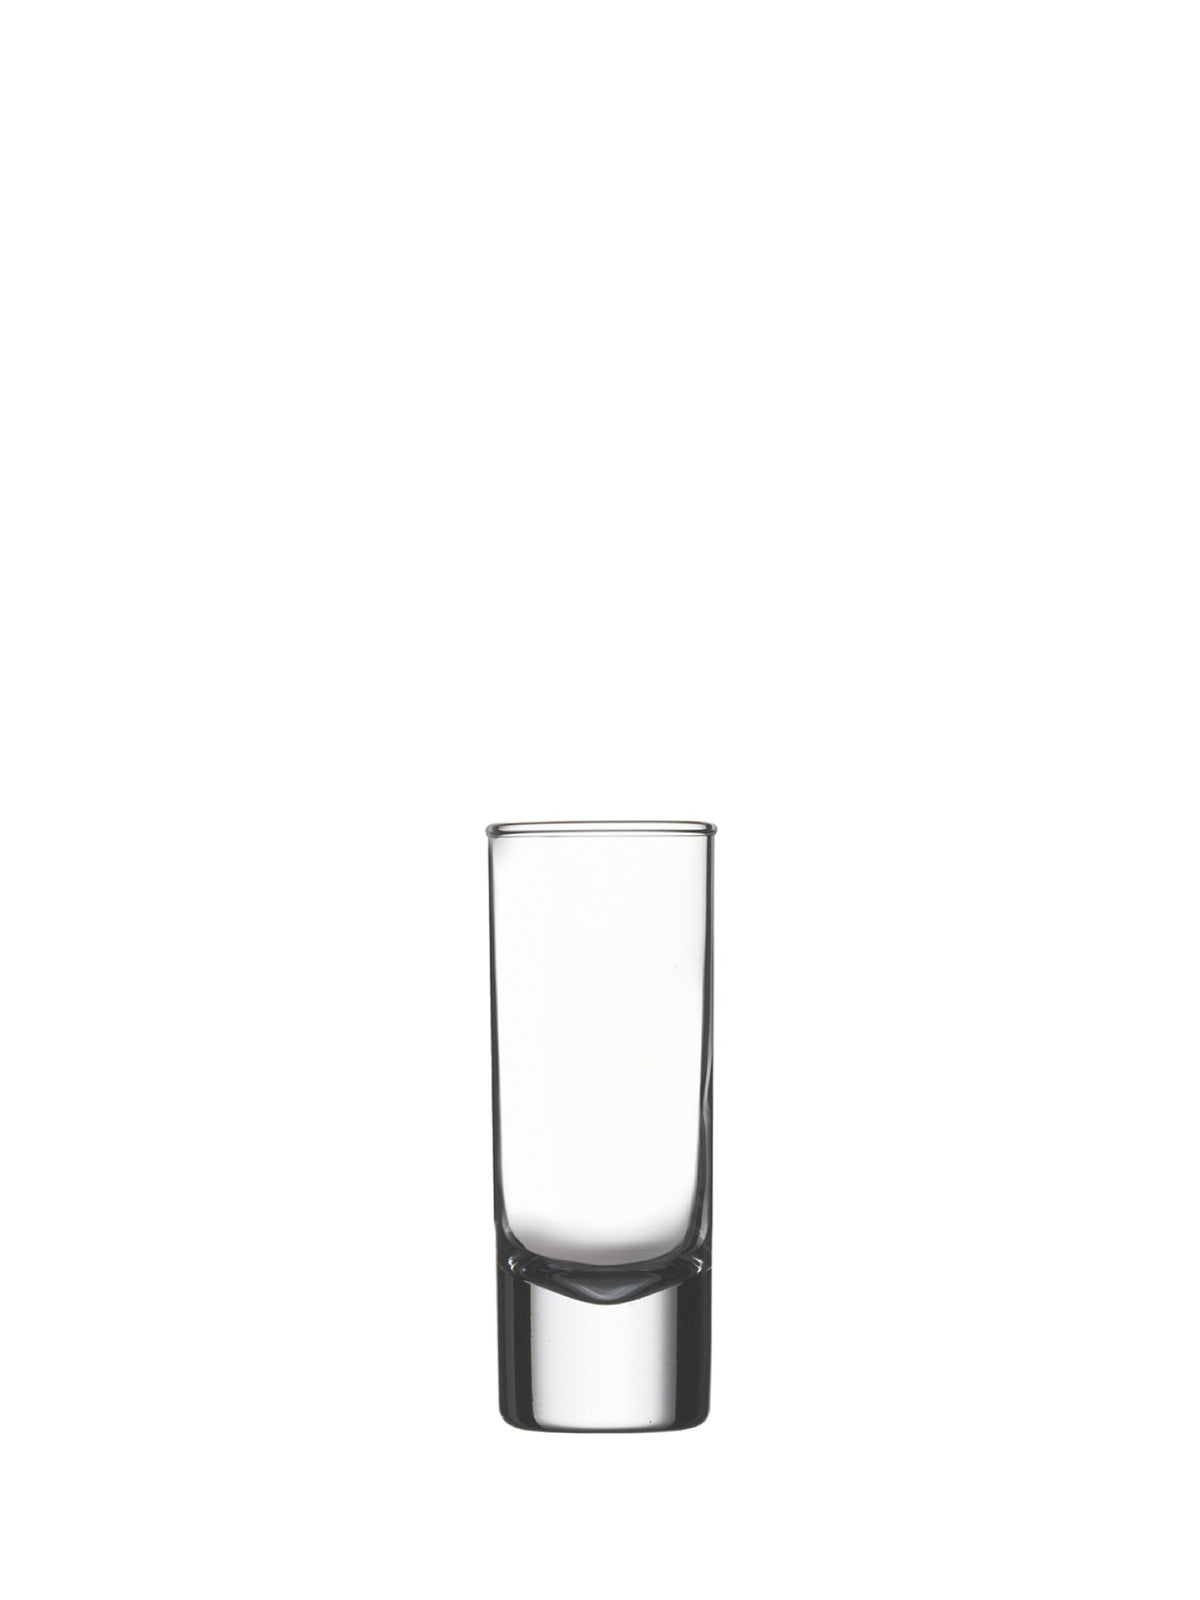 Tequila shooter glas - til at servere dine tequila skud med stil.